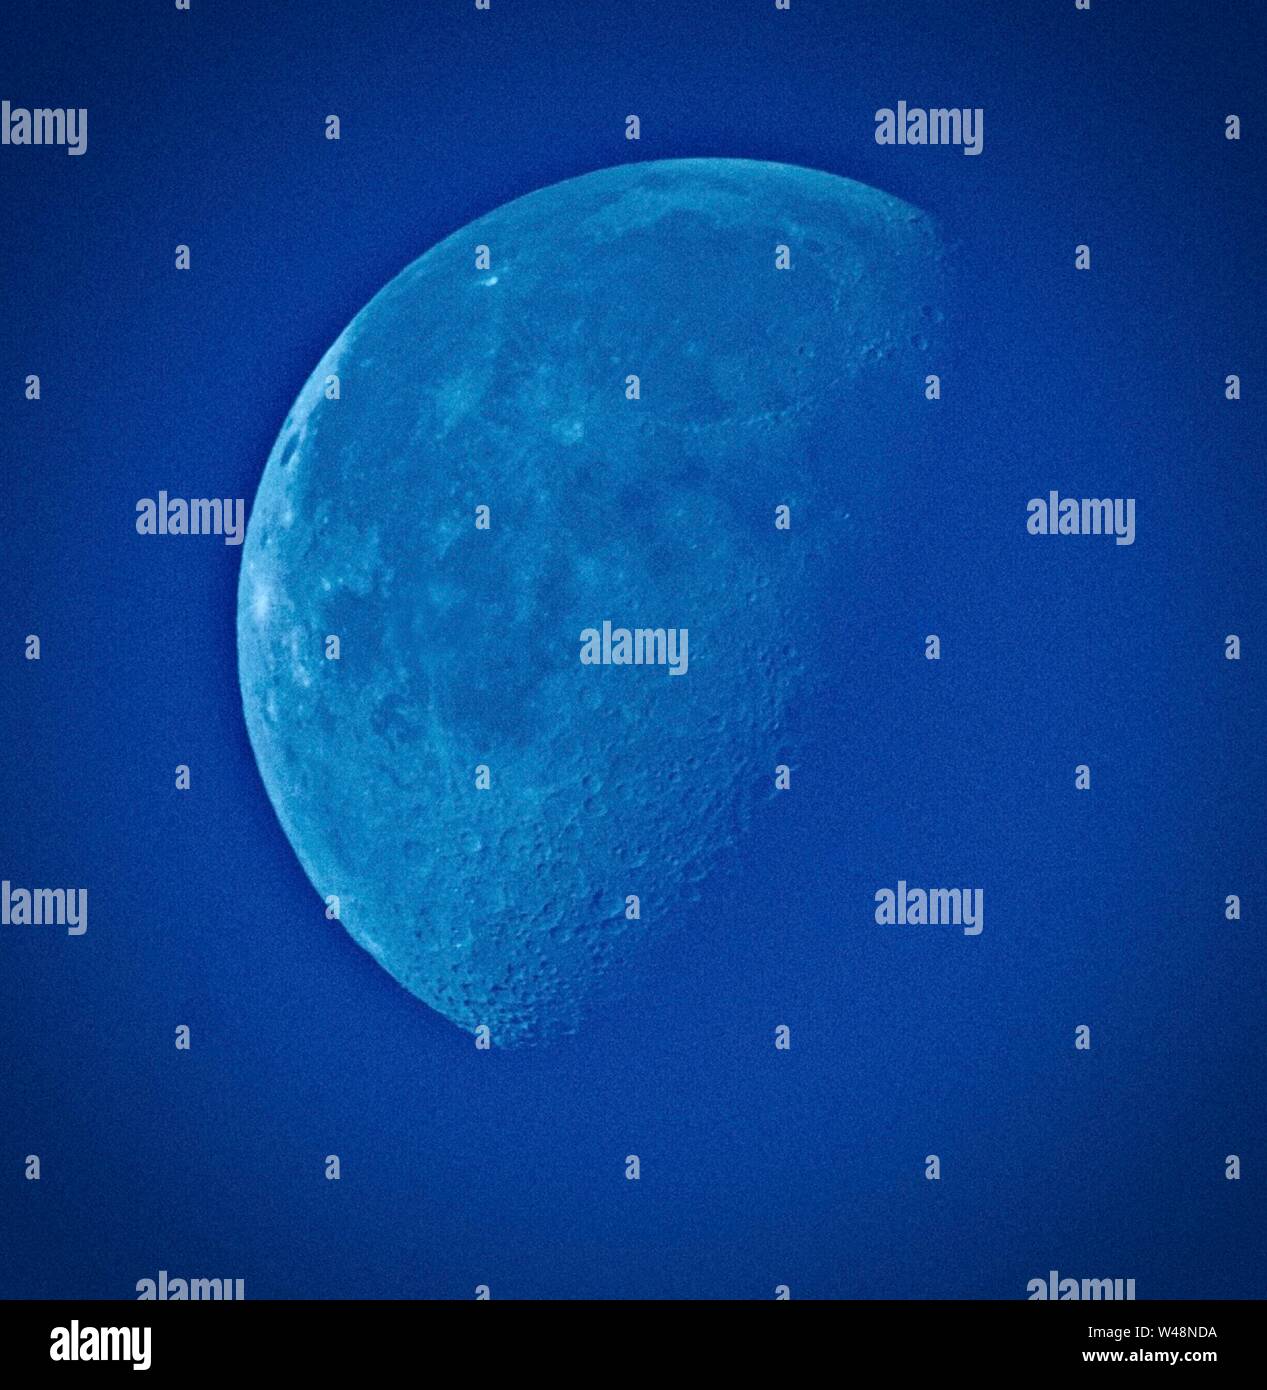 Una Luna Azul shot en una tarde soleada. La imagen ha sido manipulada para aumentar el contraste, pero no se ha introducido el color artificial. El efecto se produce cuando el tipo correcto de polvo es expulsado hacia la atmósfera filtra la luz roja excesiva - la frase "una vez cada Luna Azul" significa un evento raro. Foto de stock